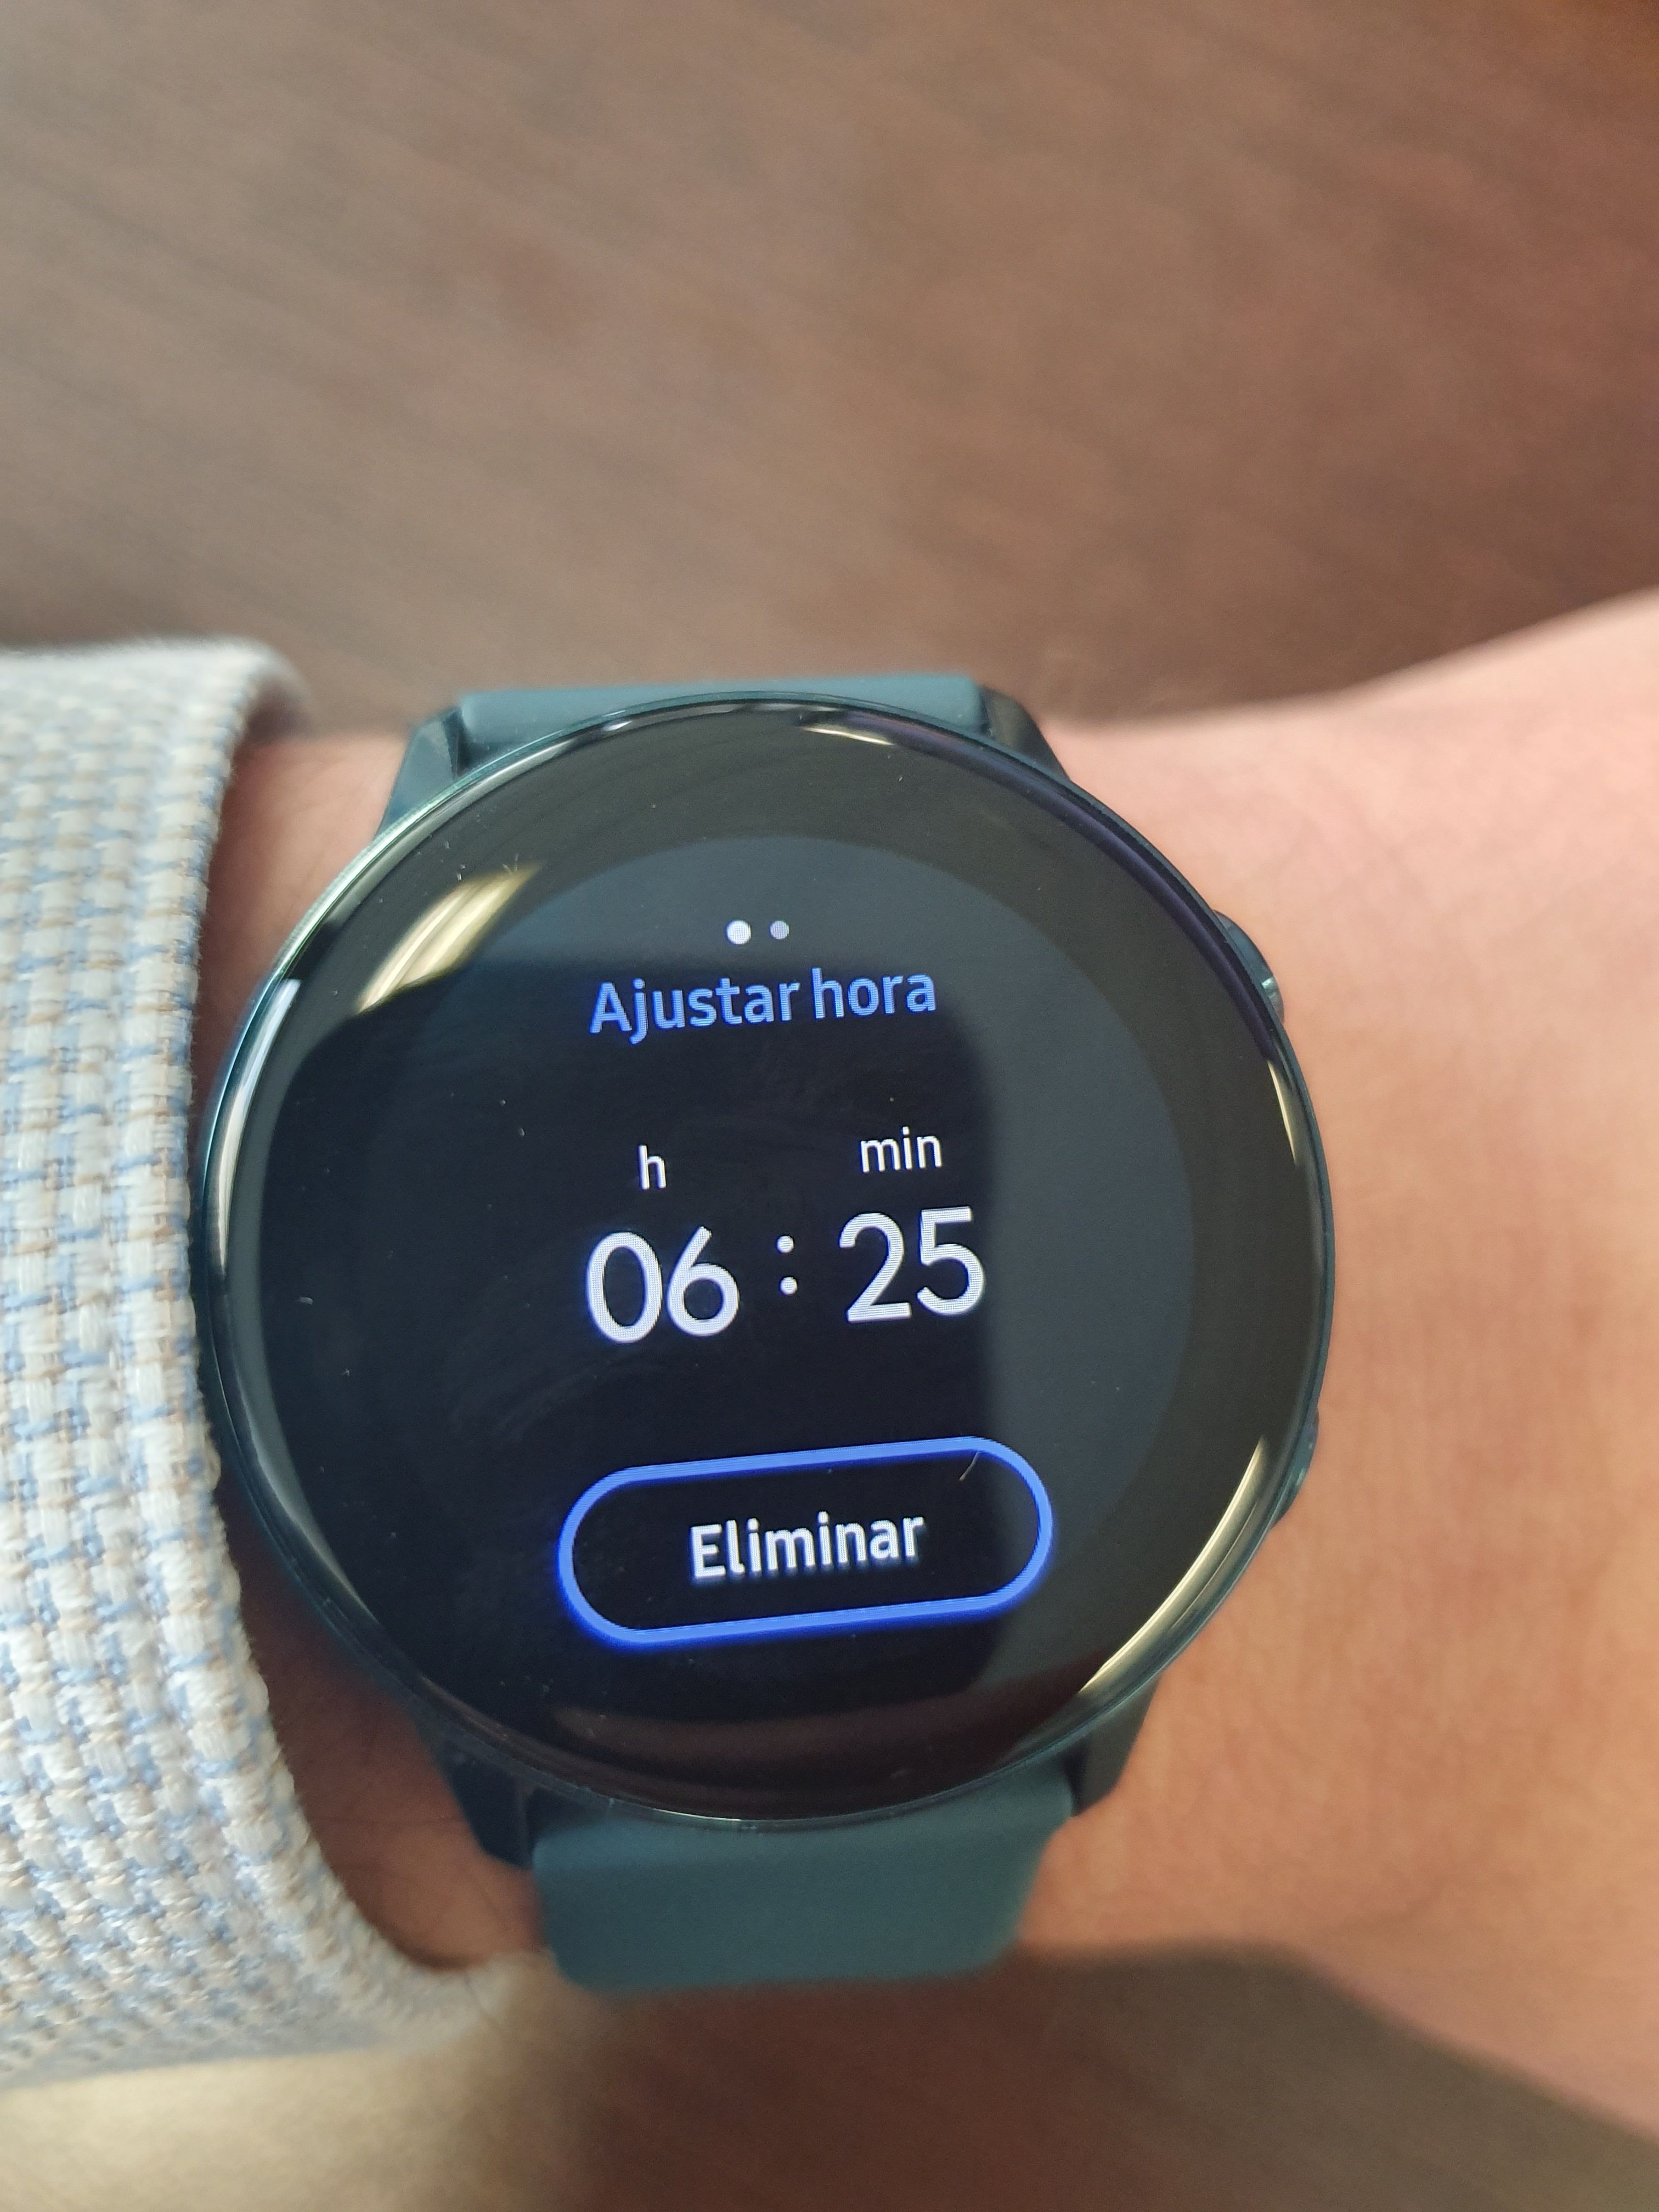 campana Normalmente gritar Galaxy Watch Active] Eliminar vibracion de alarma - Samsung Community